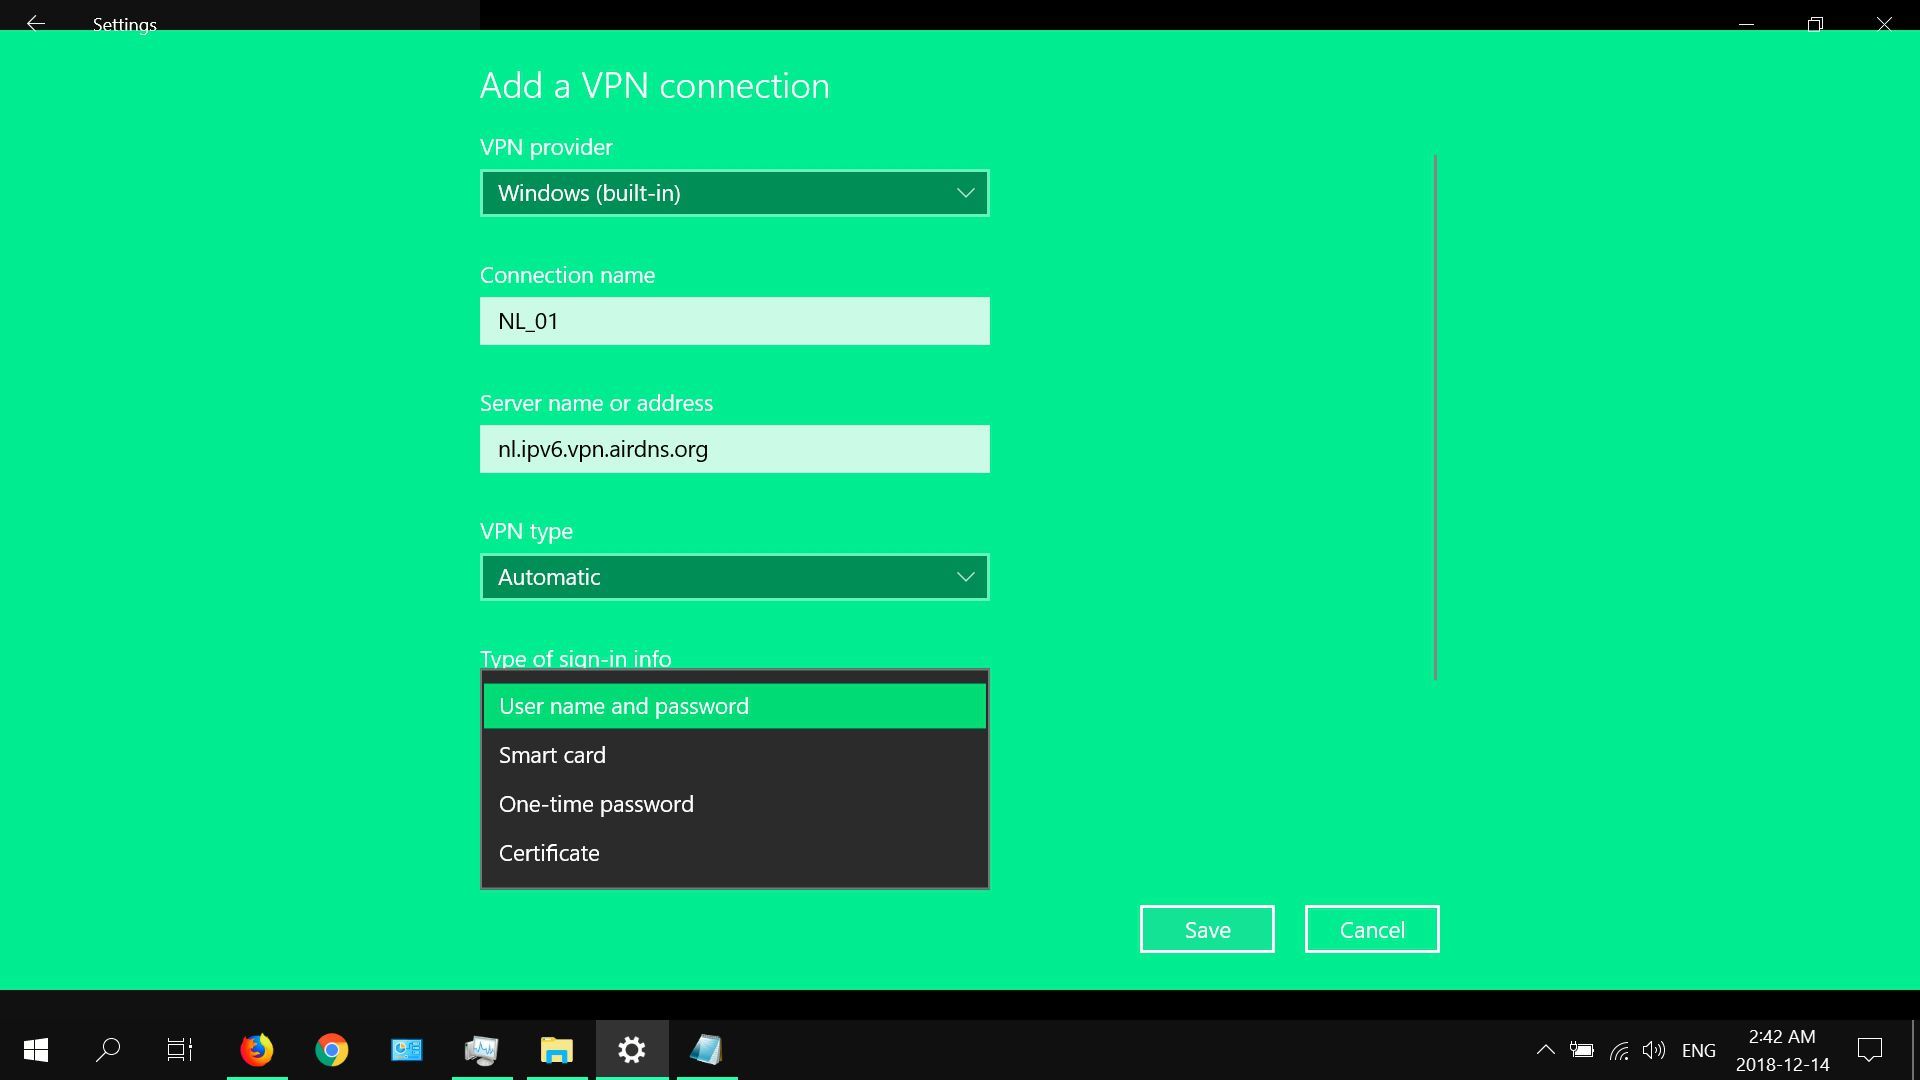 Снимок экрана, показывающий параметры входа для встроенного VPN в Windows 10.